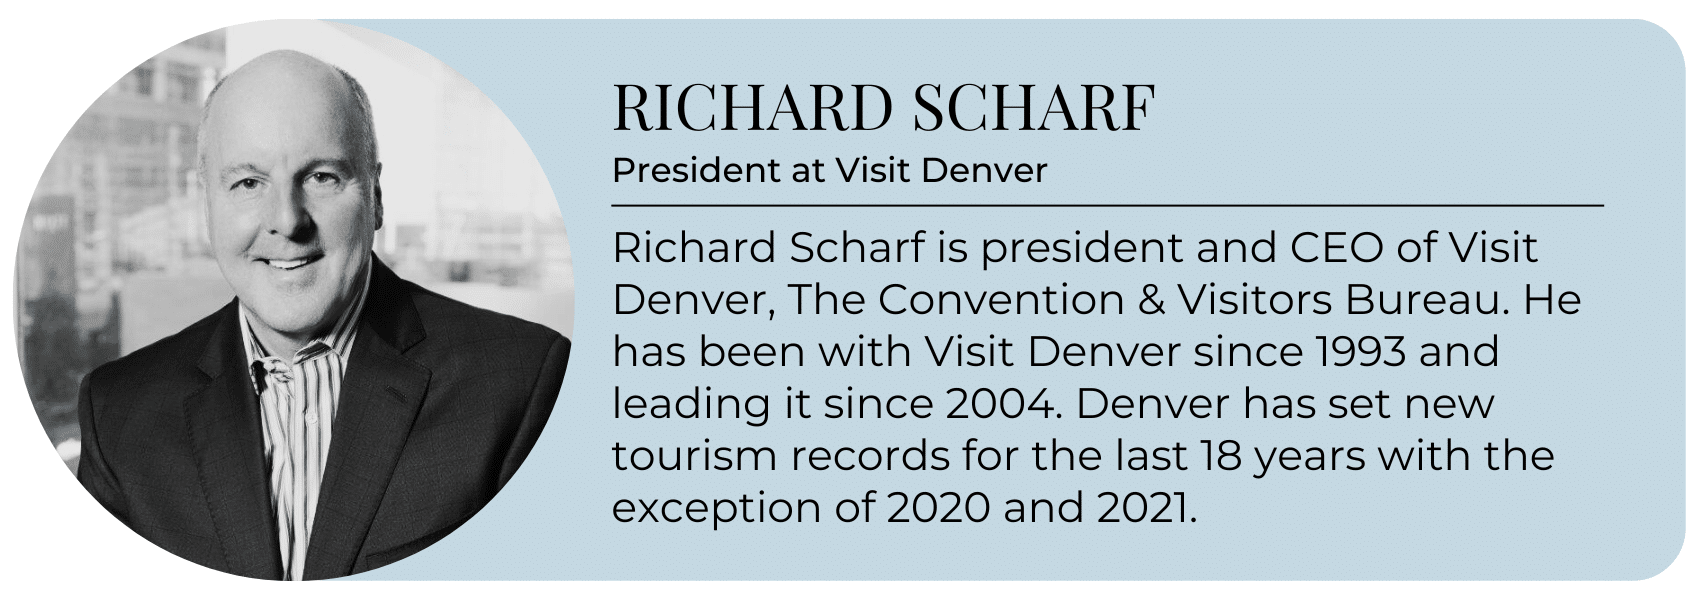 Richard Scharf